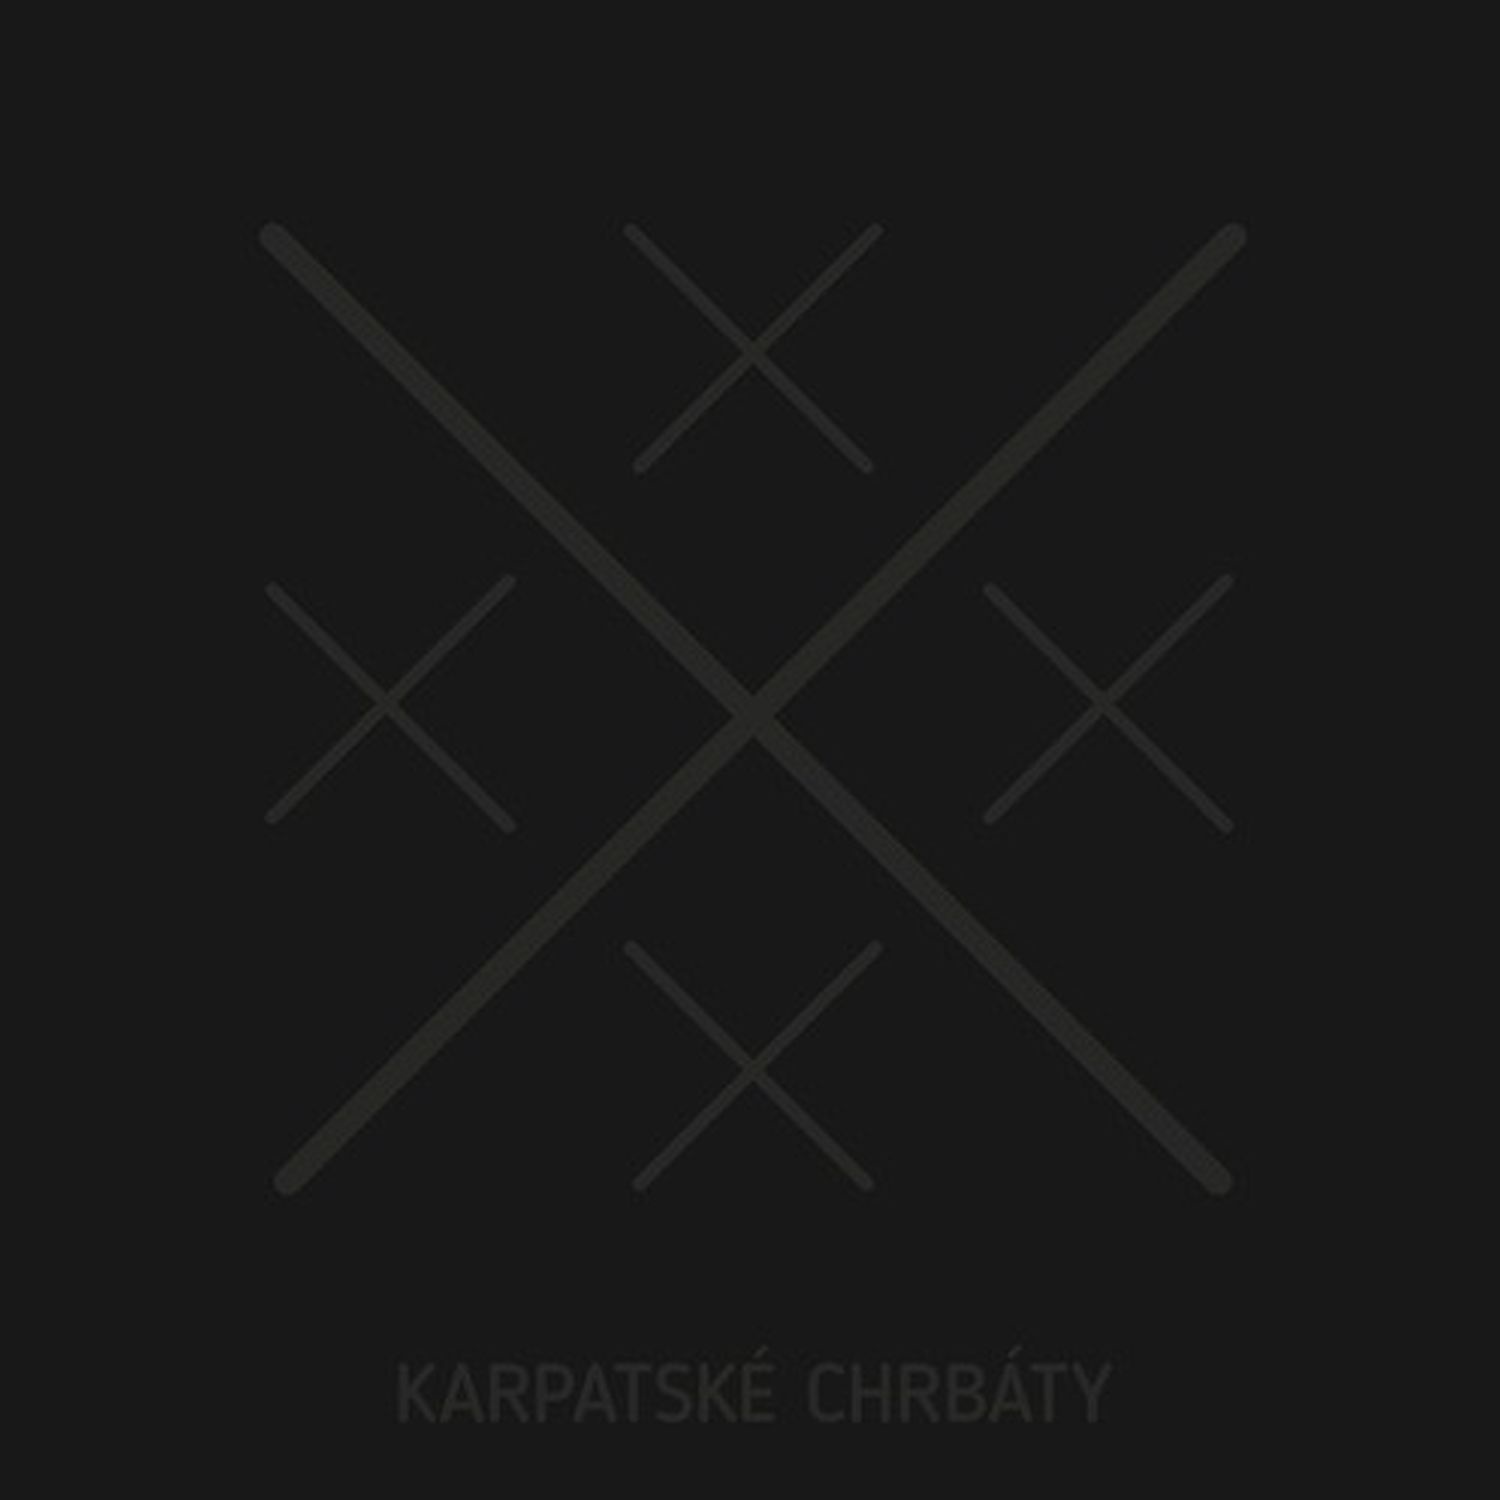 CD Shop - KARPATSKE CHRBATY XXXXX